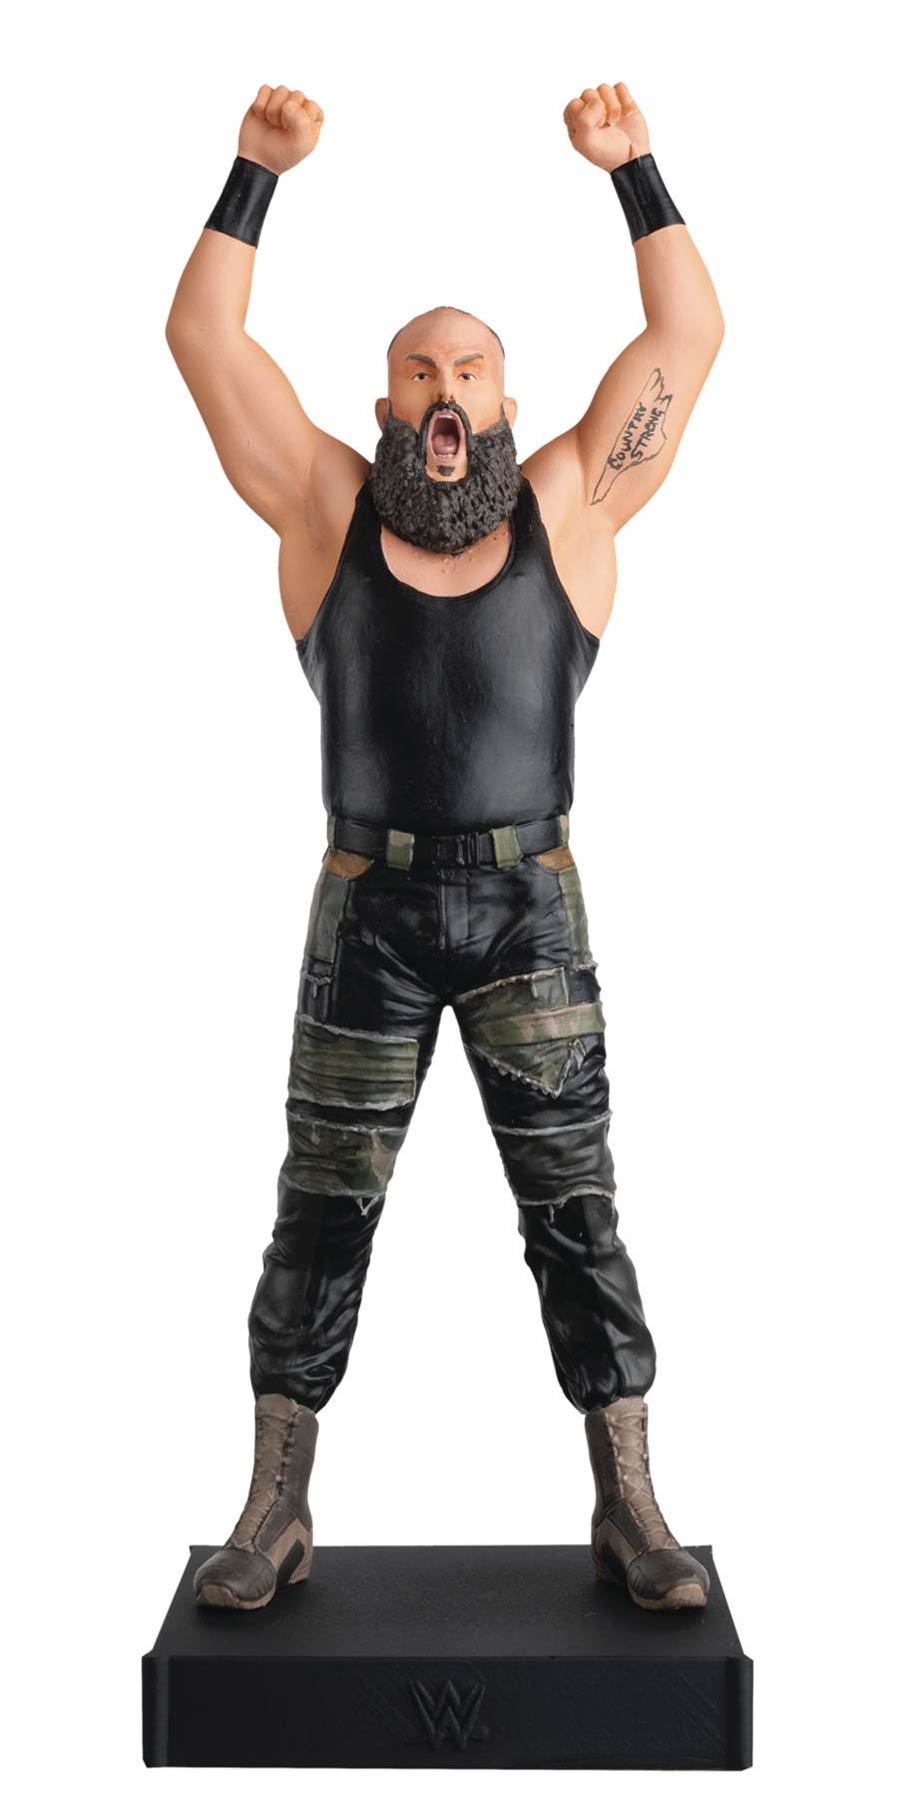 WWE Figurine Championship Collection #6 Braun Strowman